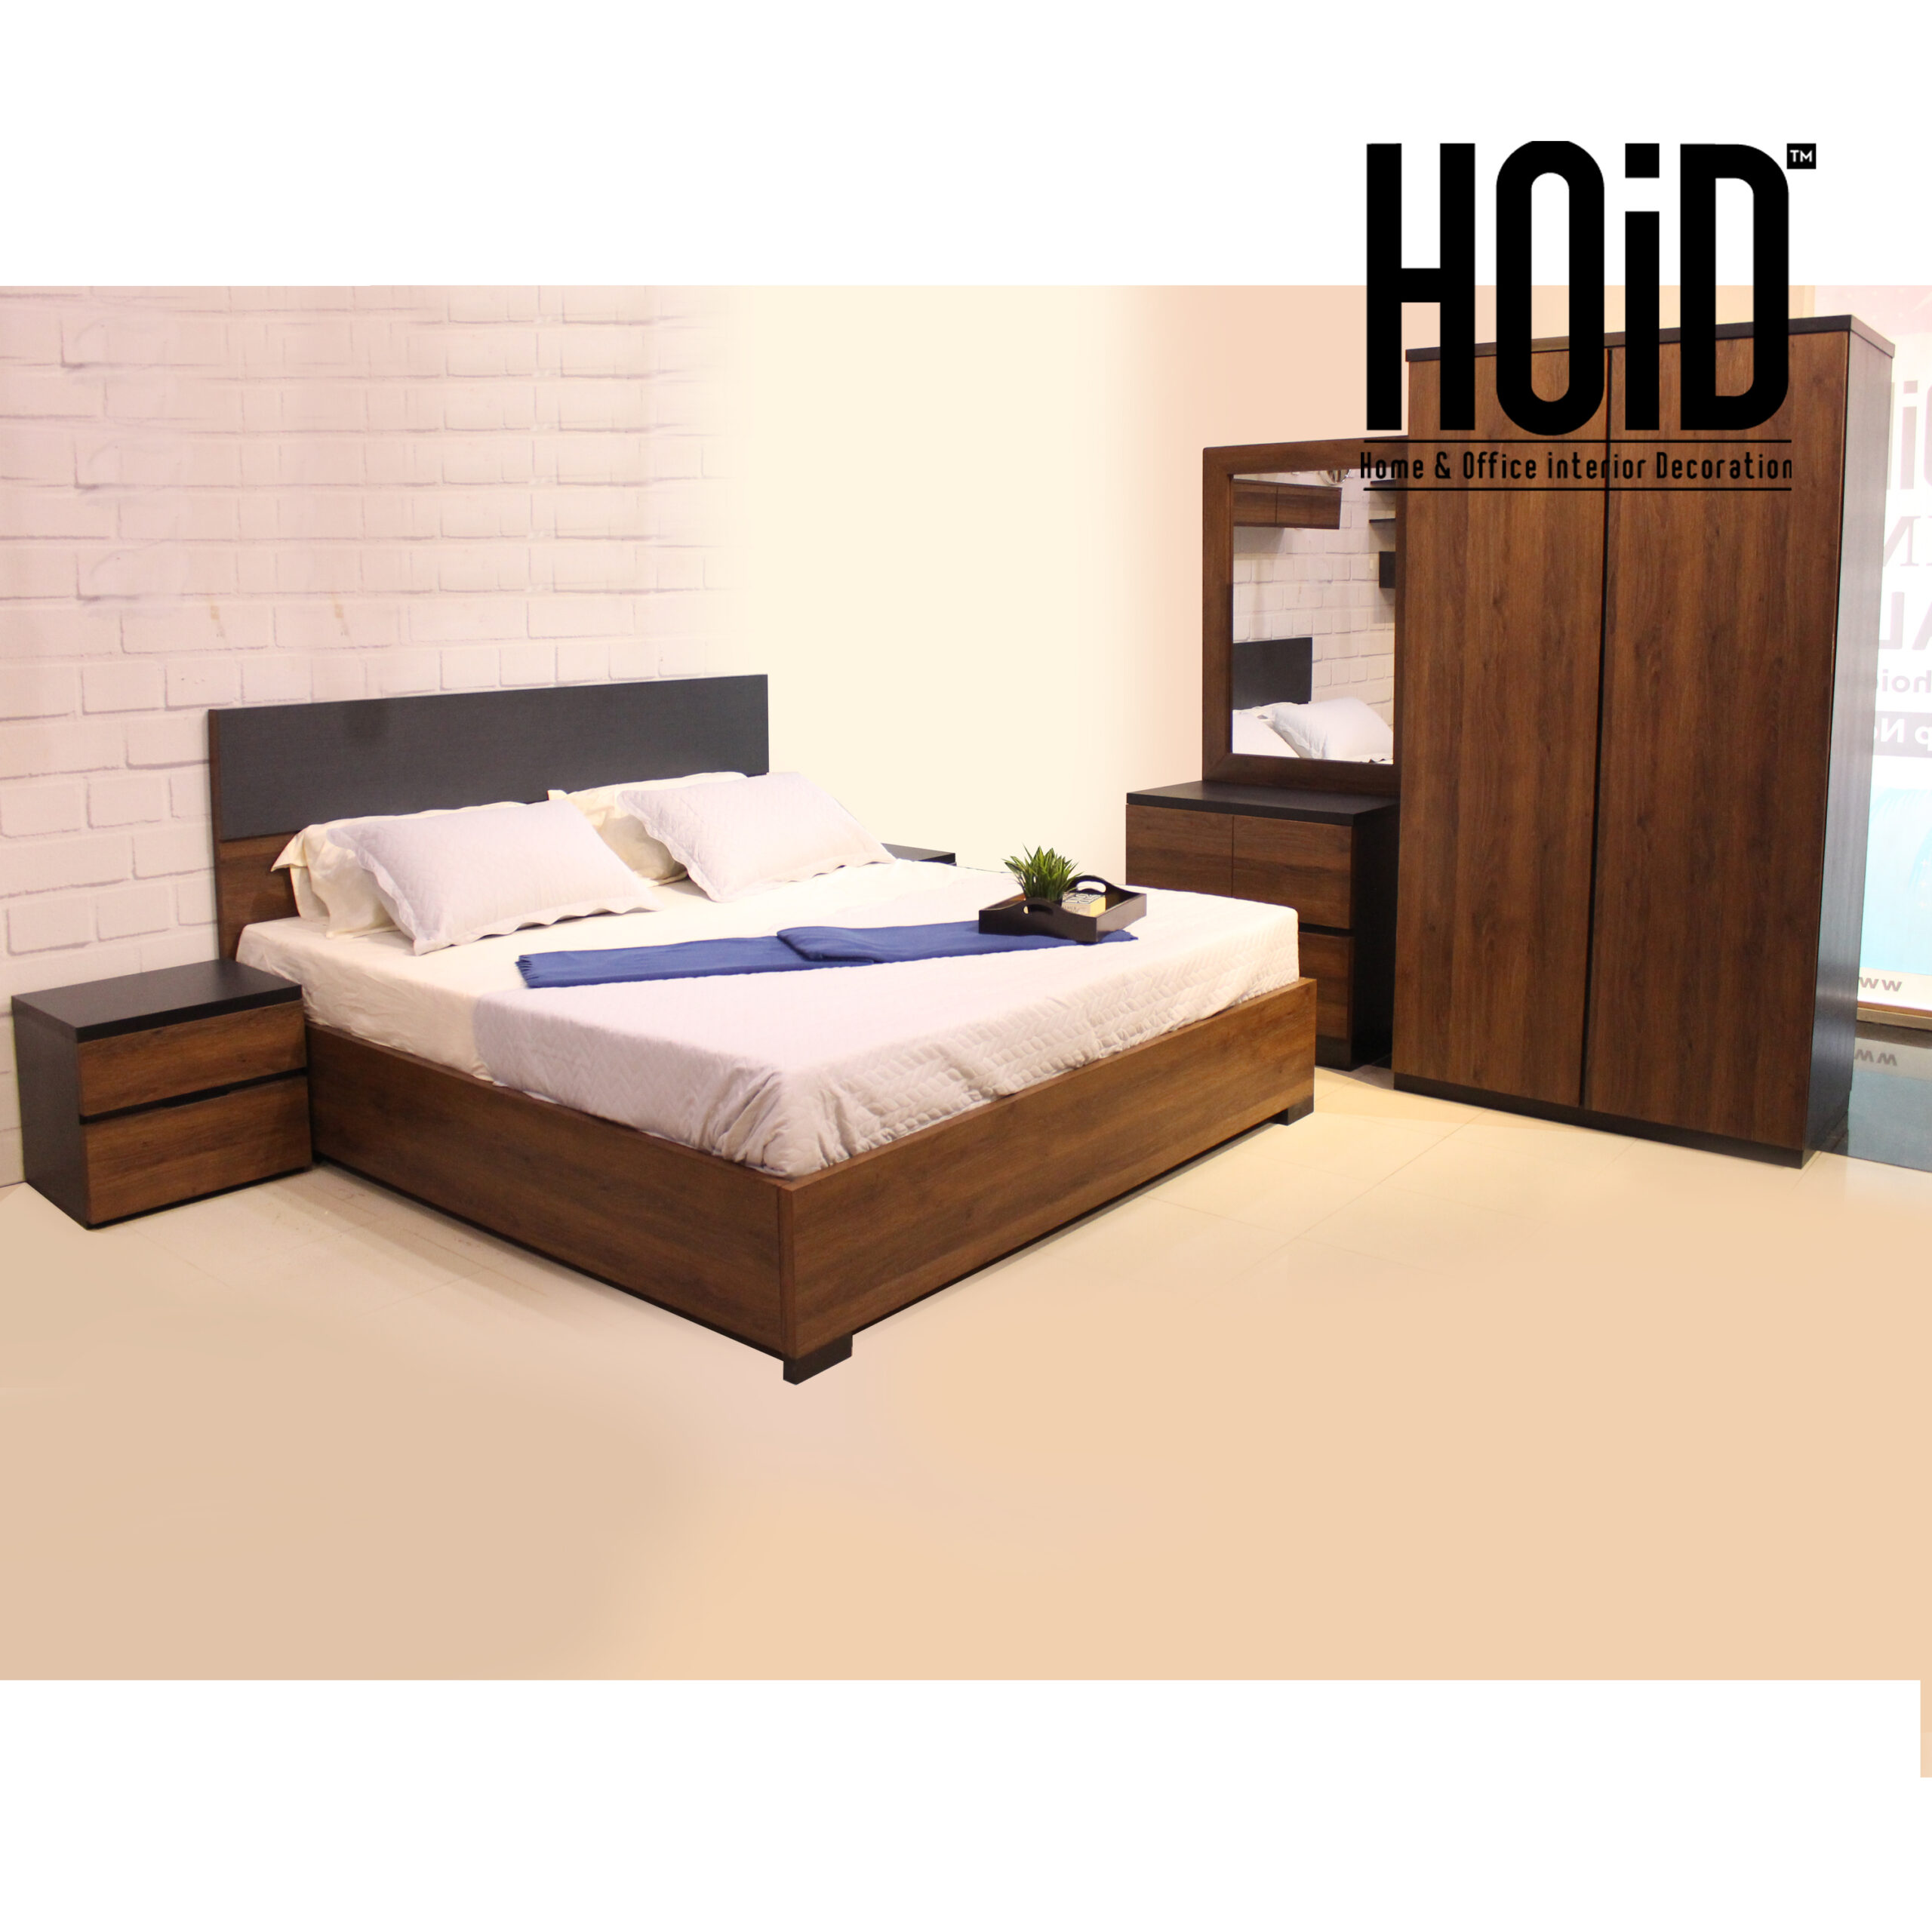 cora-bed-set-with-2-door-wardrobe-scaled-2.jpg